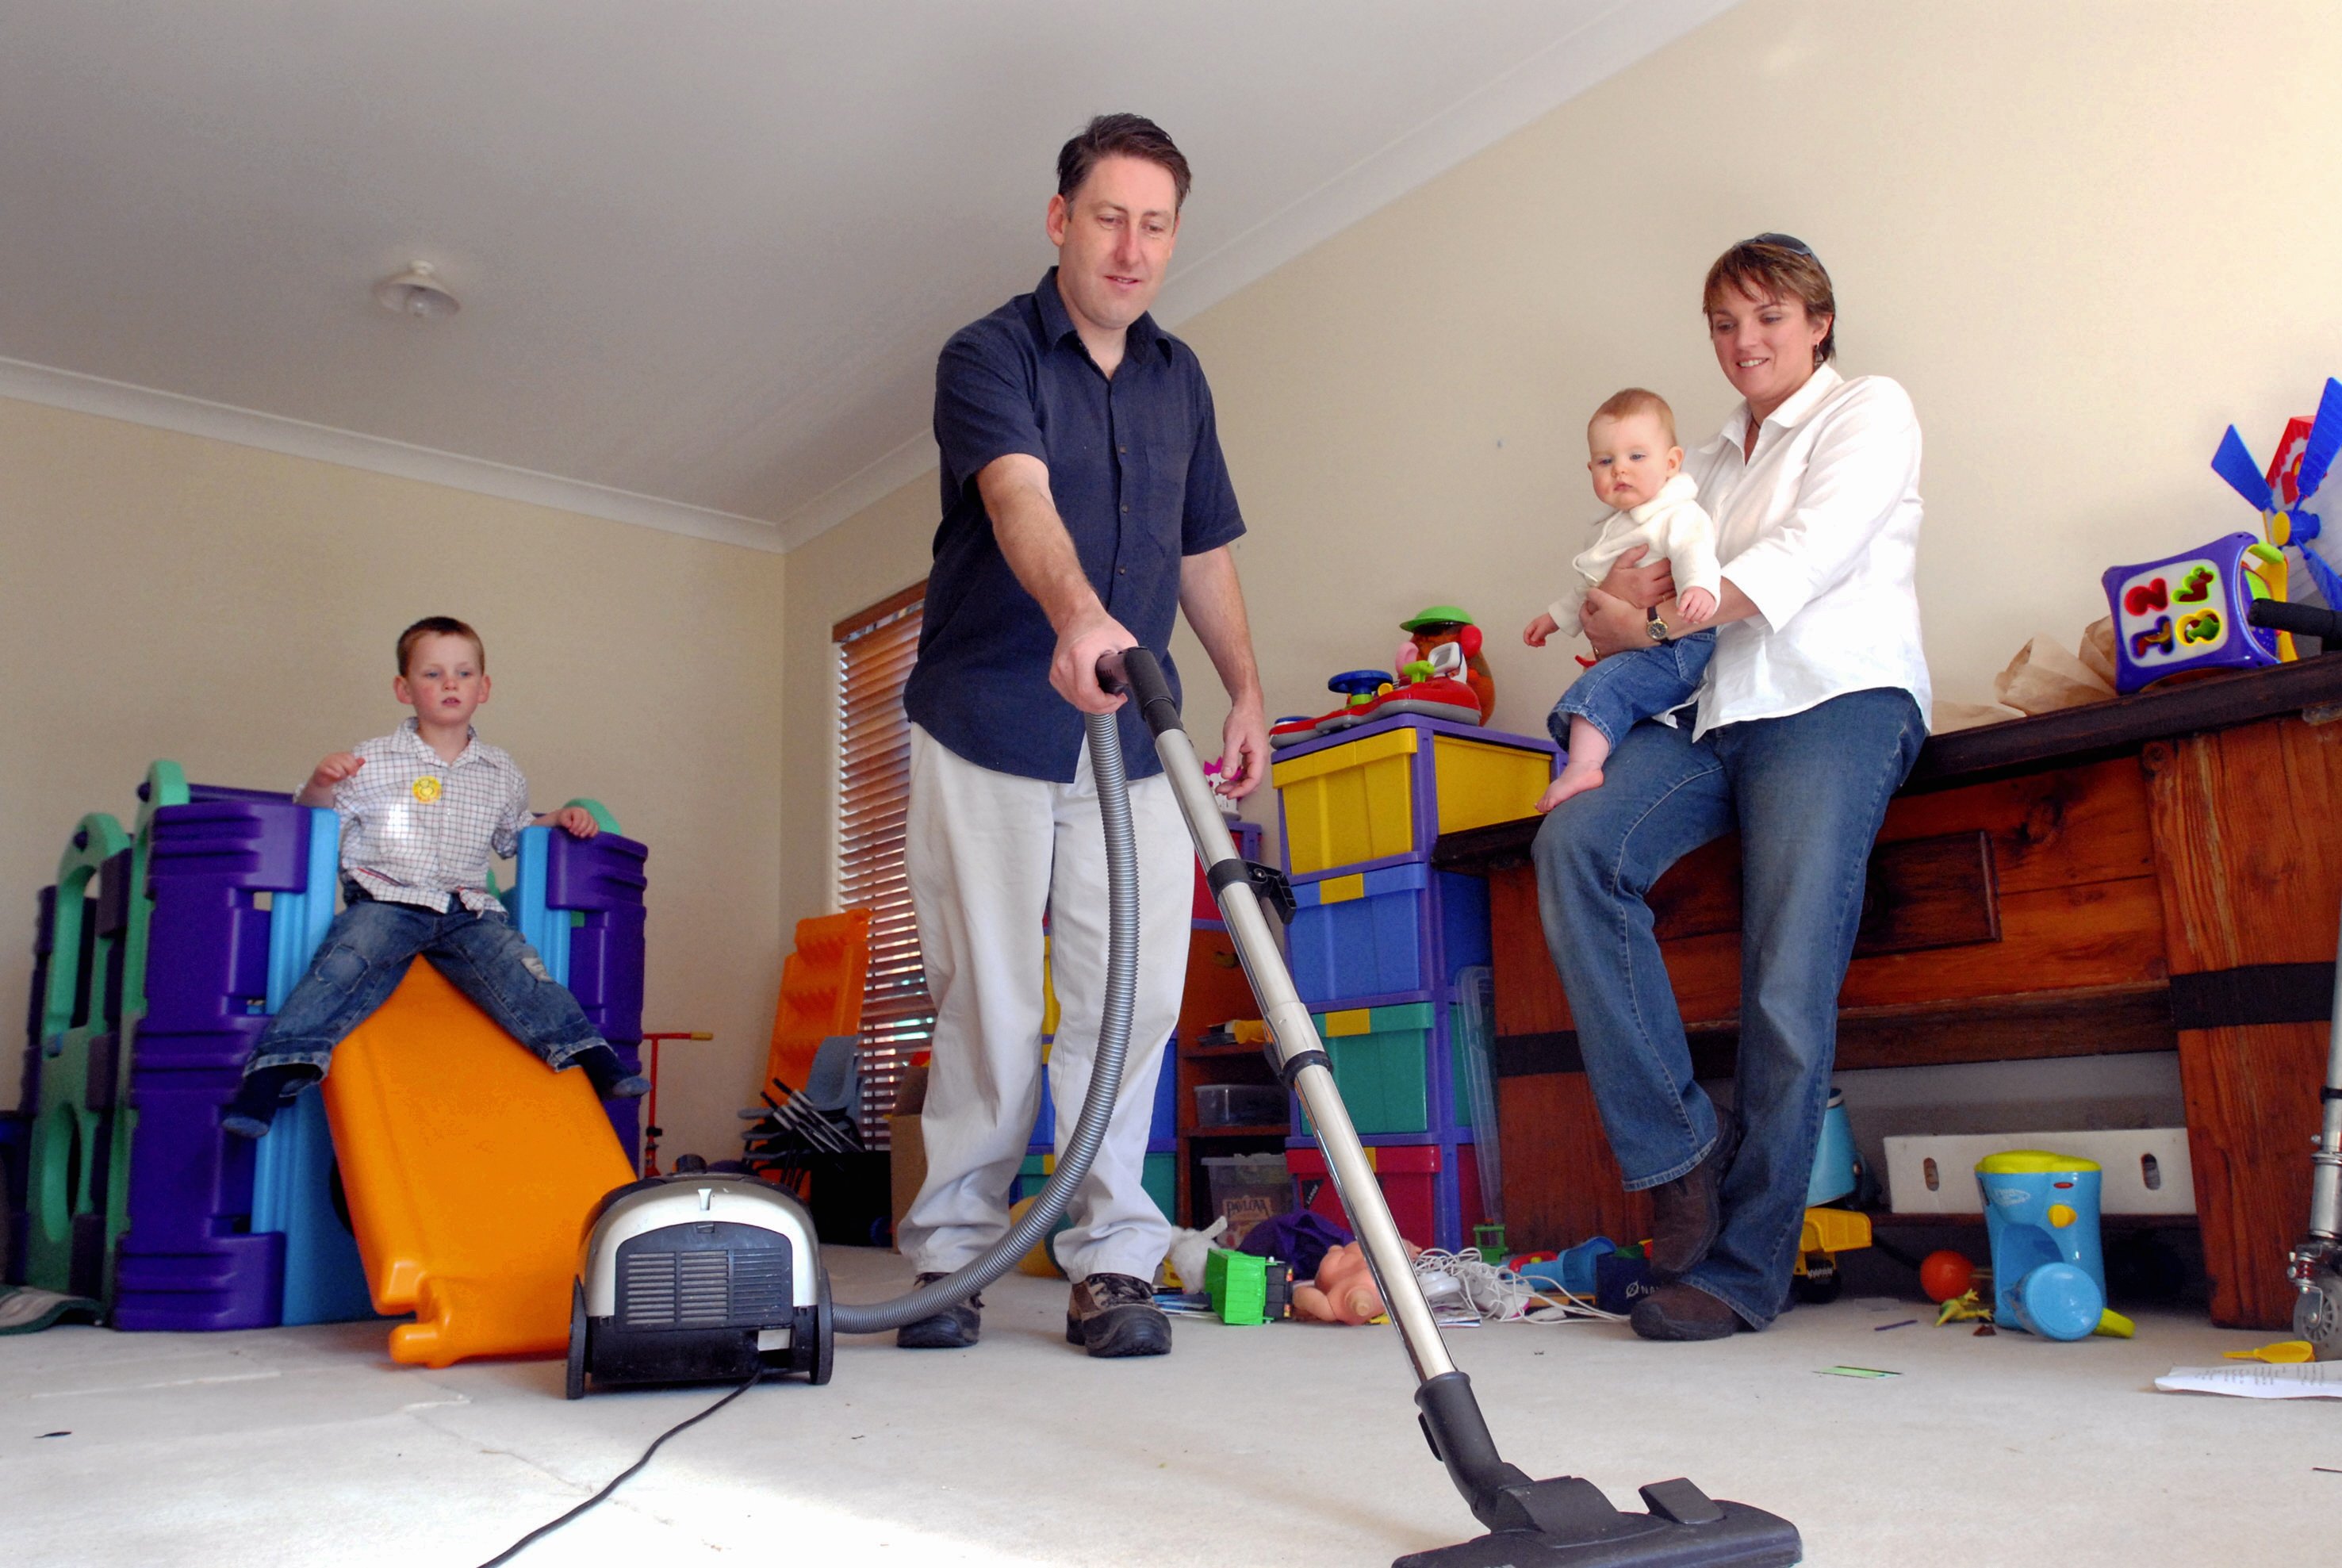 Une famille faisant le ménage | Source: Getty Images